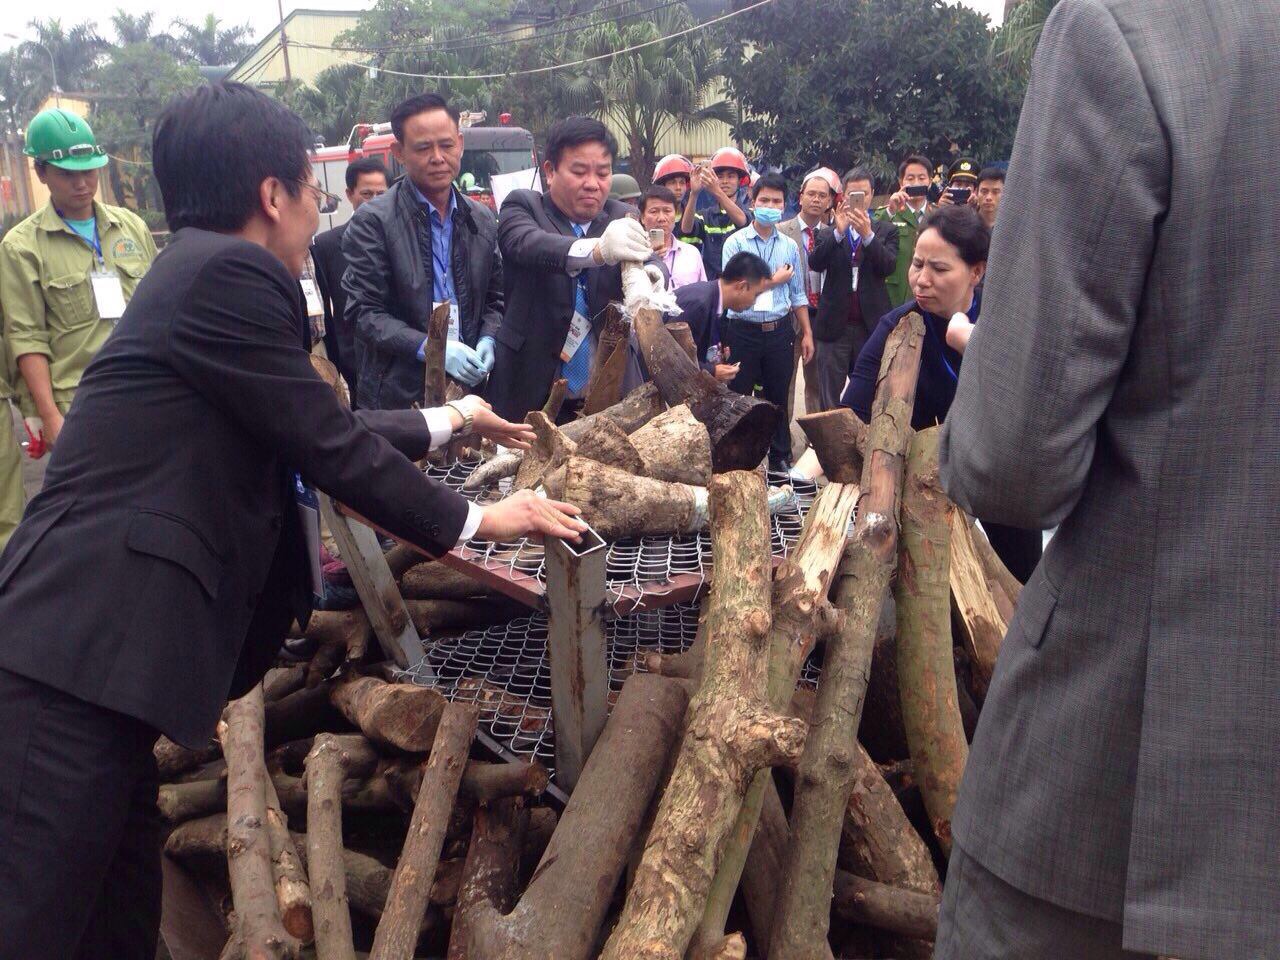 Ông Hà Công Tuấn, Thứ trưởng Bộ Nông nghiệp và Phát triển nông thôn và ông Lê Văn Thời, Phó Tổng cục trưởng Tổng cục DTNN cùng đại diện các bộ, ngành chứng kiến việc tiêu hủy các mẫu vật.